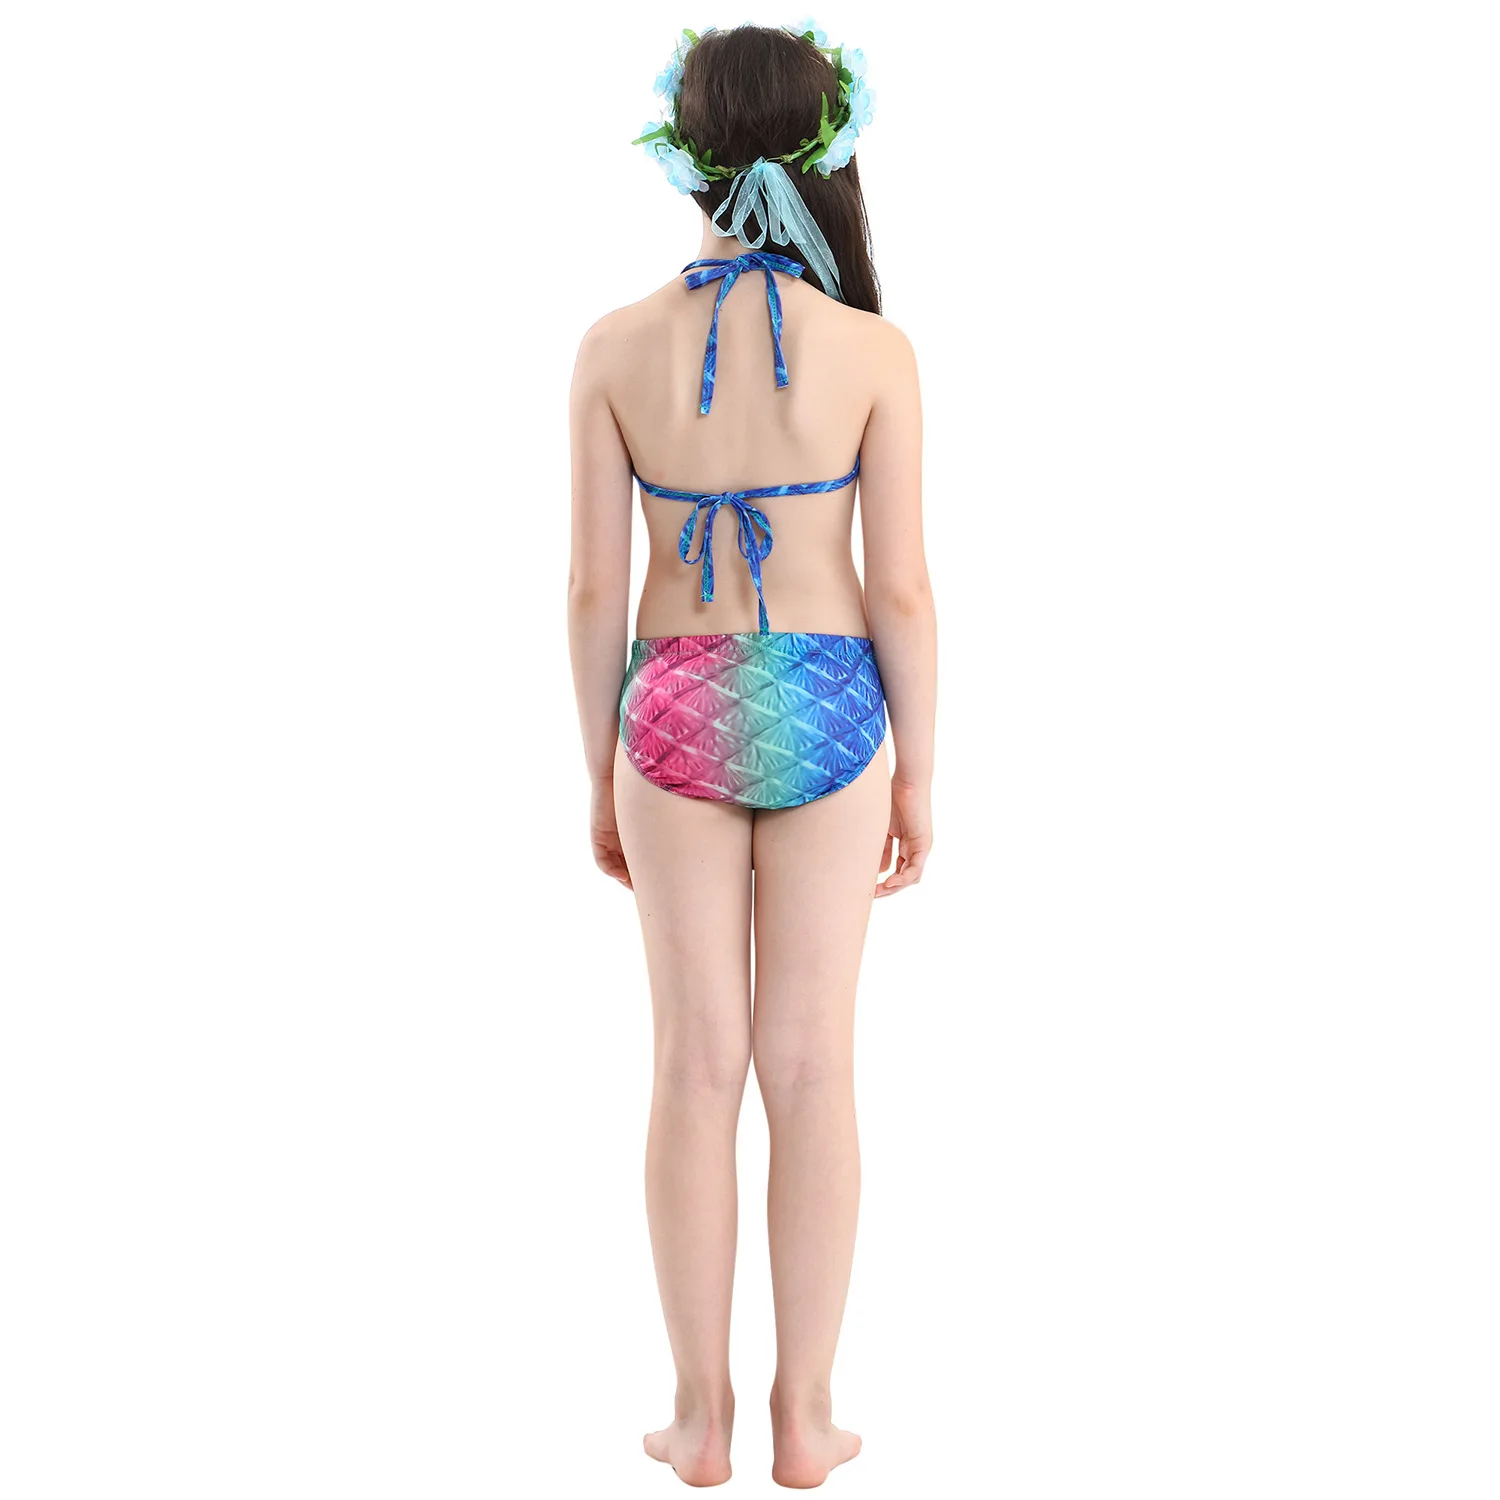 2019 детская Русалка костюм купальник бикини из трех частей Горячие весенний купальный костюм Костюм Русалки Косплей Детский костюм на